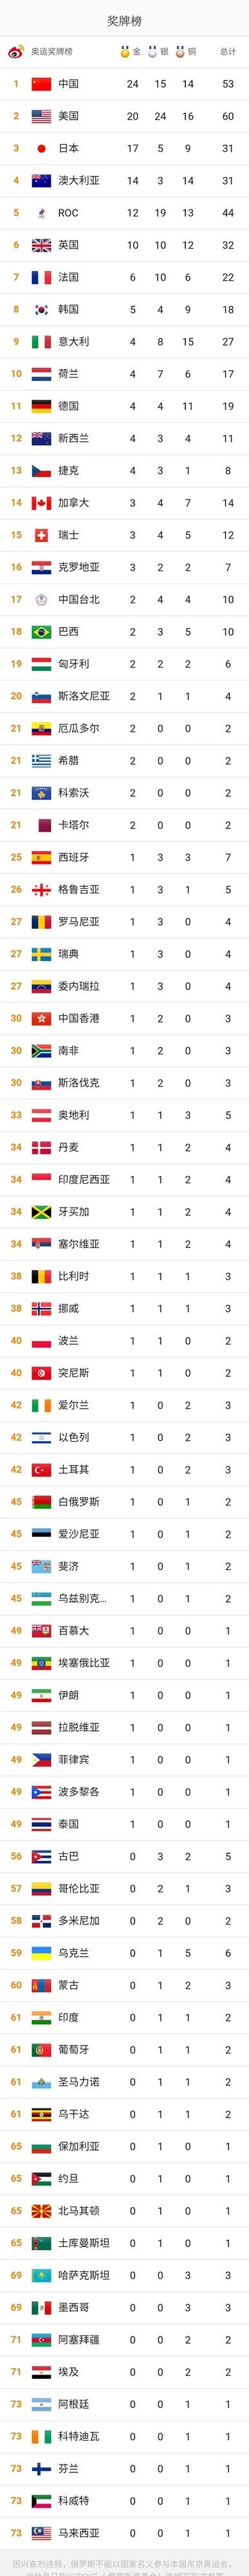 东京奥运会一共有多少个国家参加(北京奥运会一共有多少个国家参加)